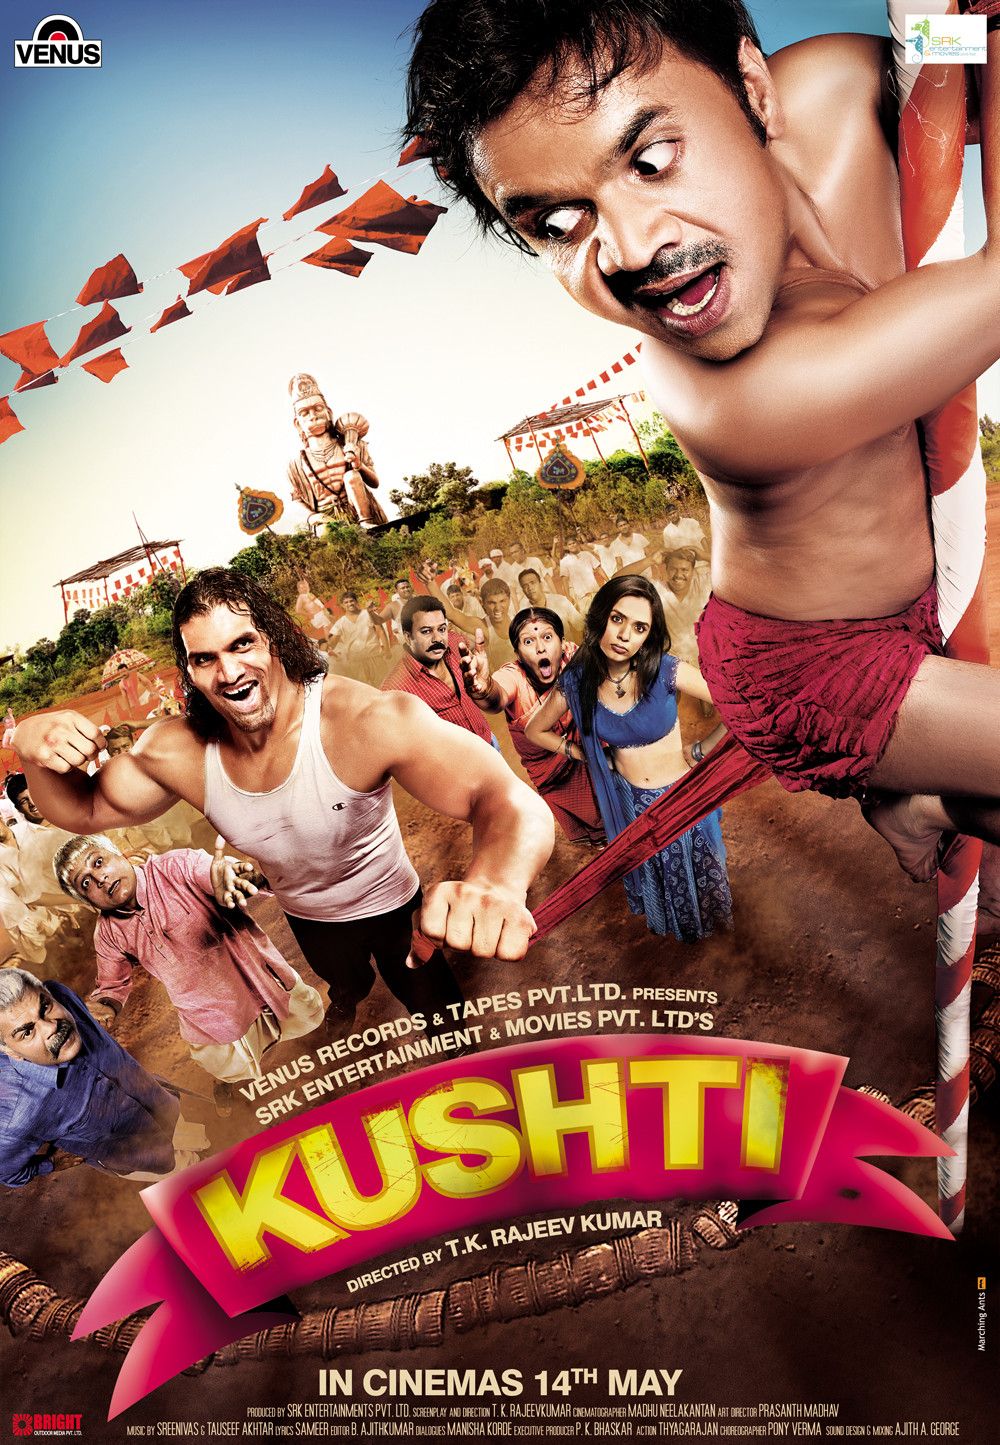 Extra Large Movie Poster Image for Kushti (#4 of 4)